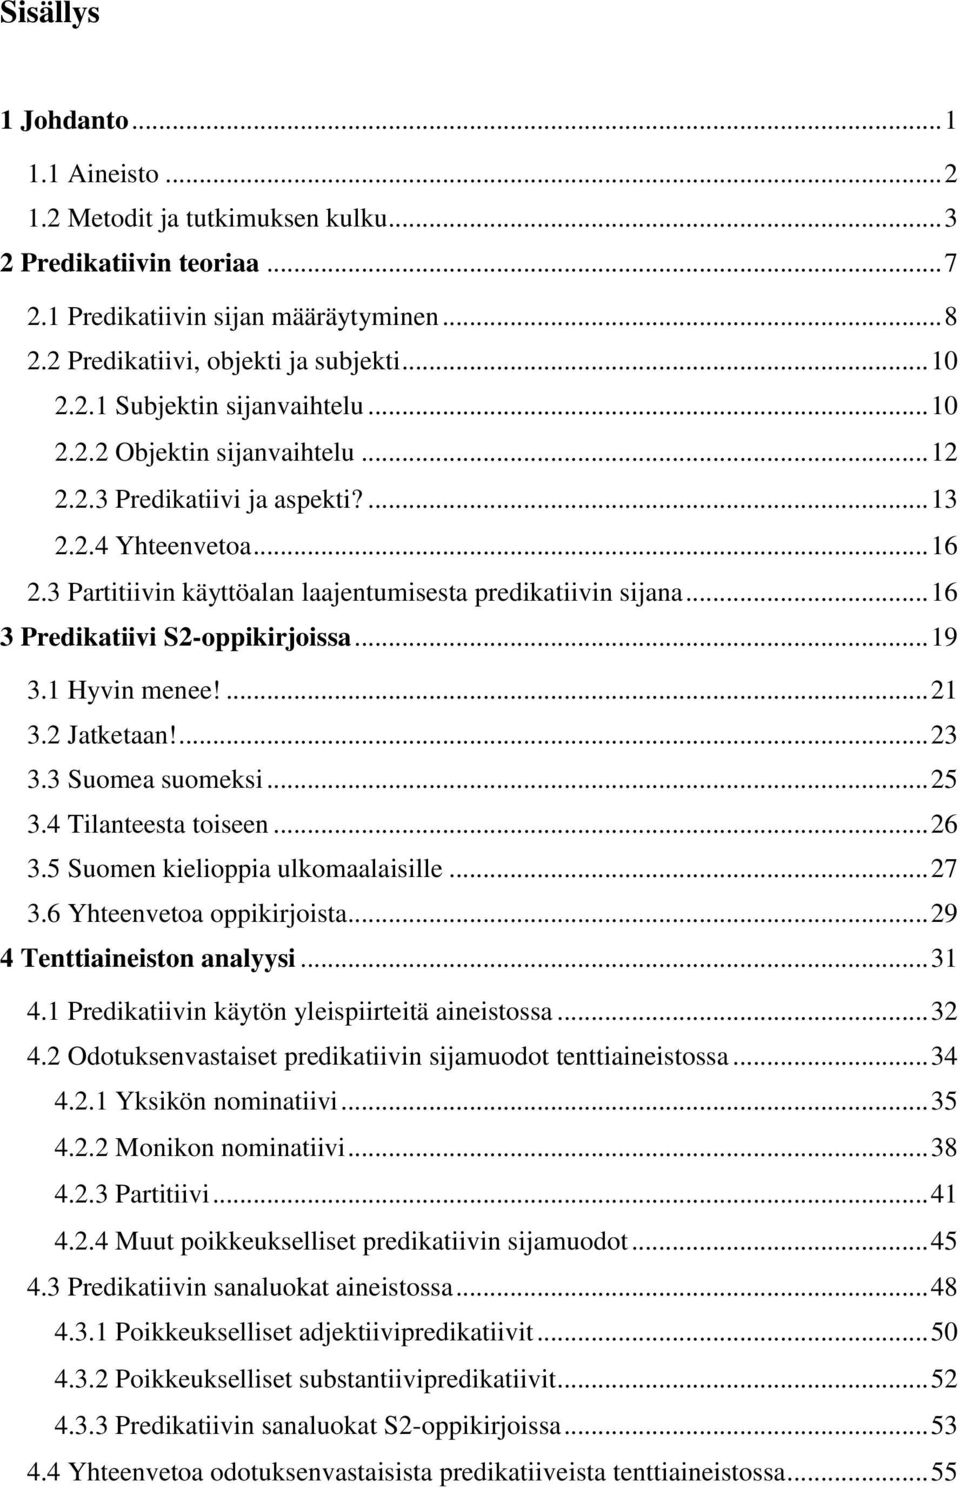 .. 16 3 Predikatiivi S2-oppikirjoissa... 19 3.1 Hyvin menee!... 21 3.2 Jatketaan!... 23 3.3 Suomea suomeksi... 25 3.4 Tilanteesta toiseen... 26 3.5 Suomen kielioppia ulkomaalaisille... 27 3.